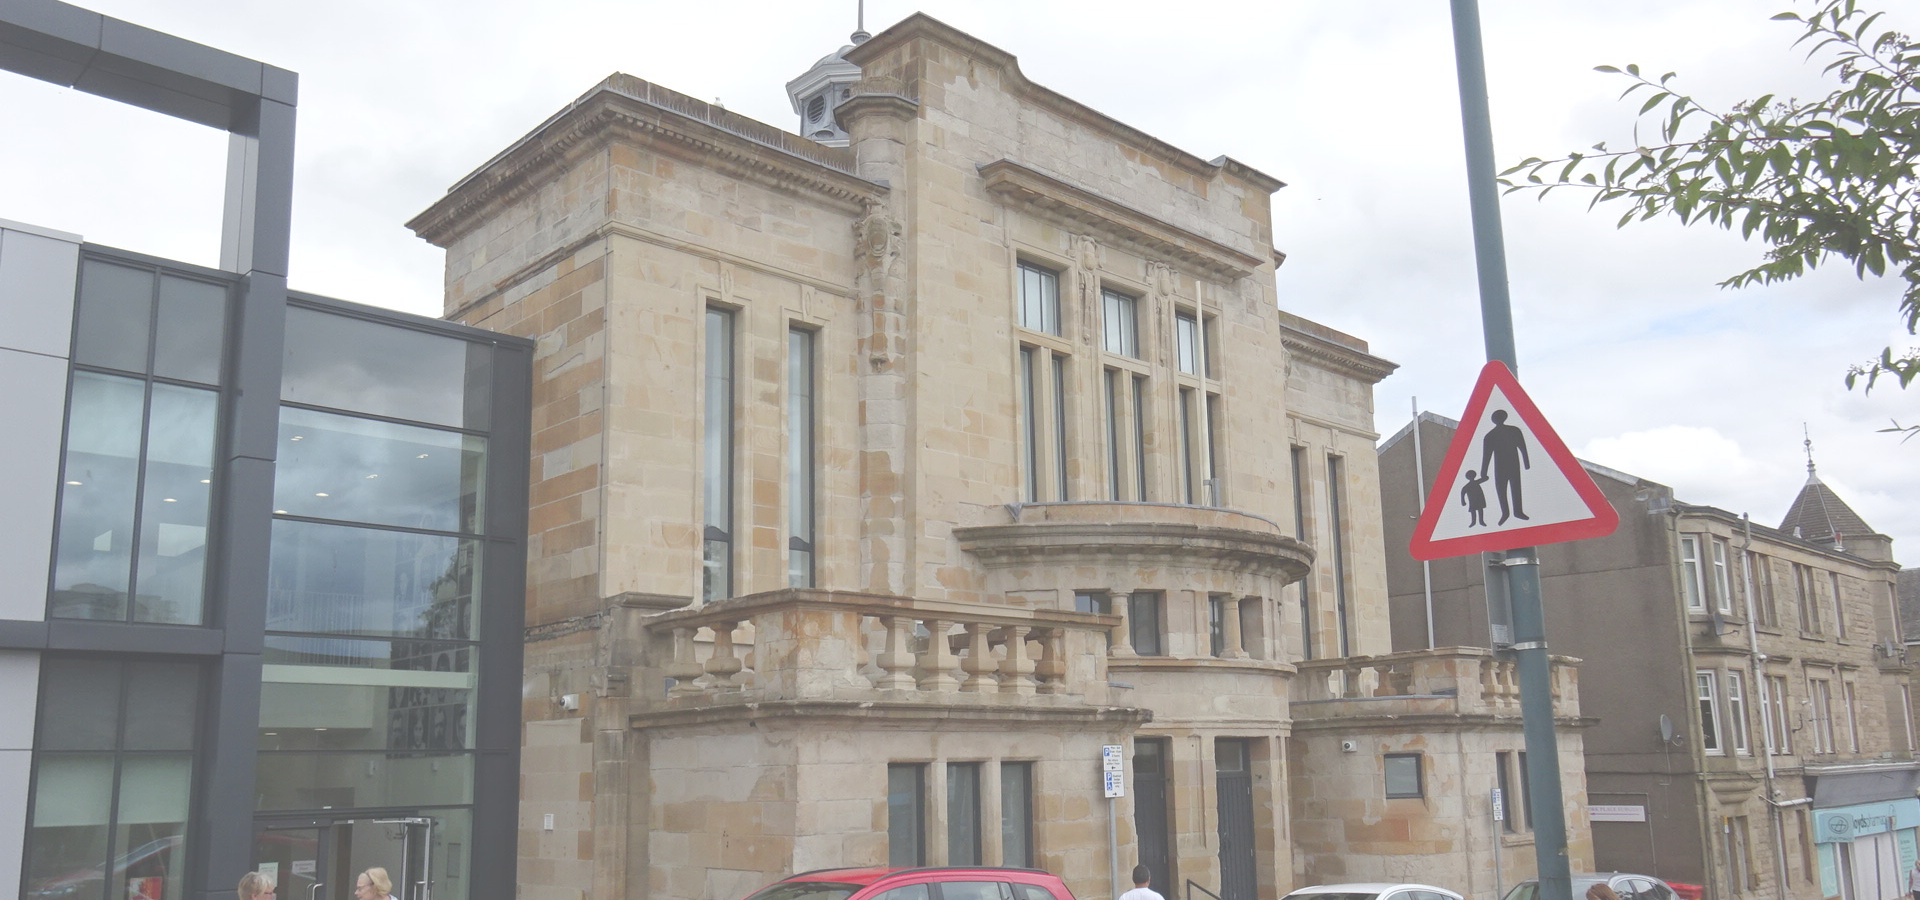 Kirkintilloch Town Hall, East Dunbartonshire